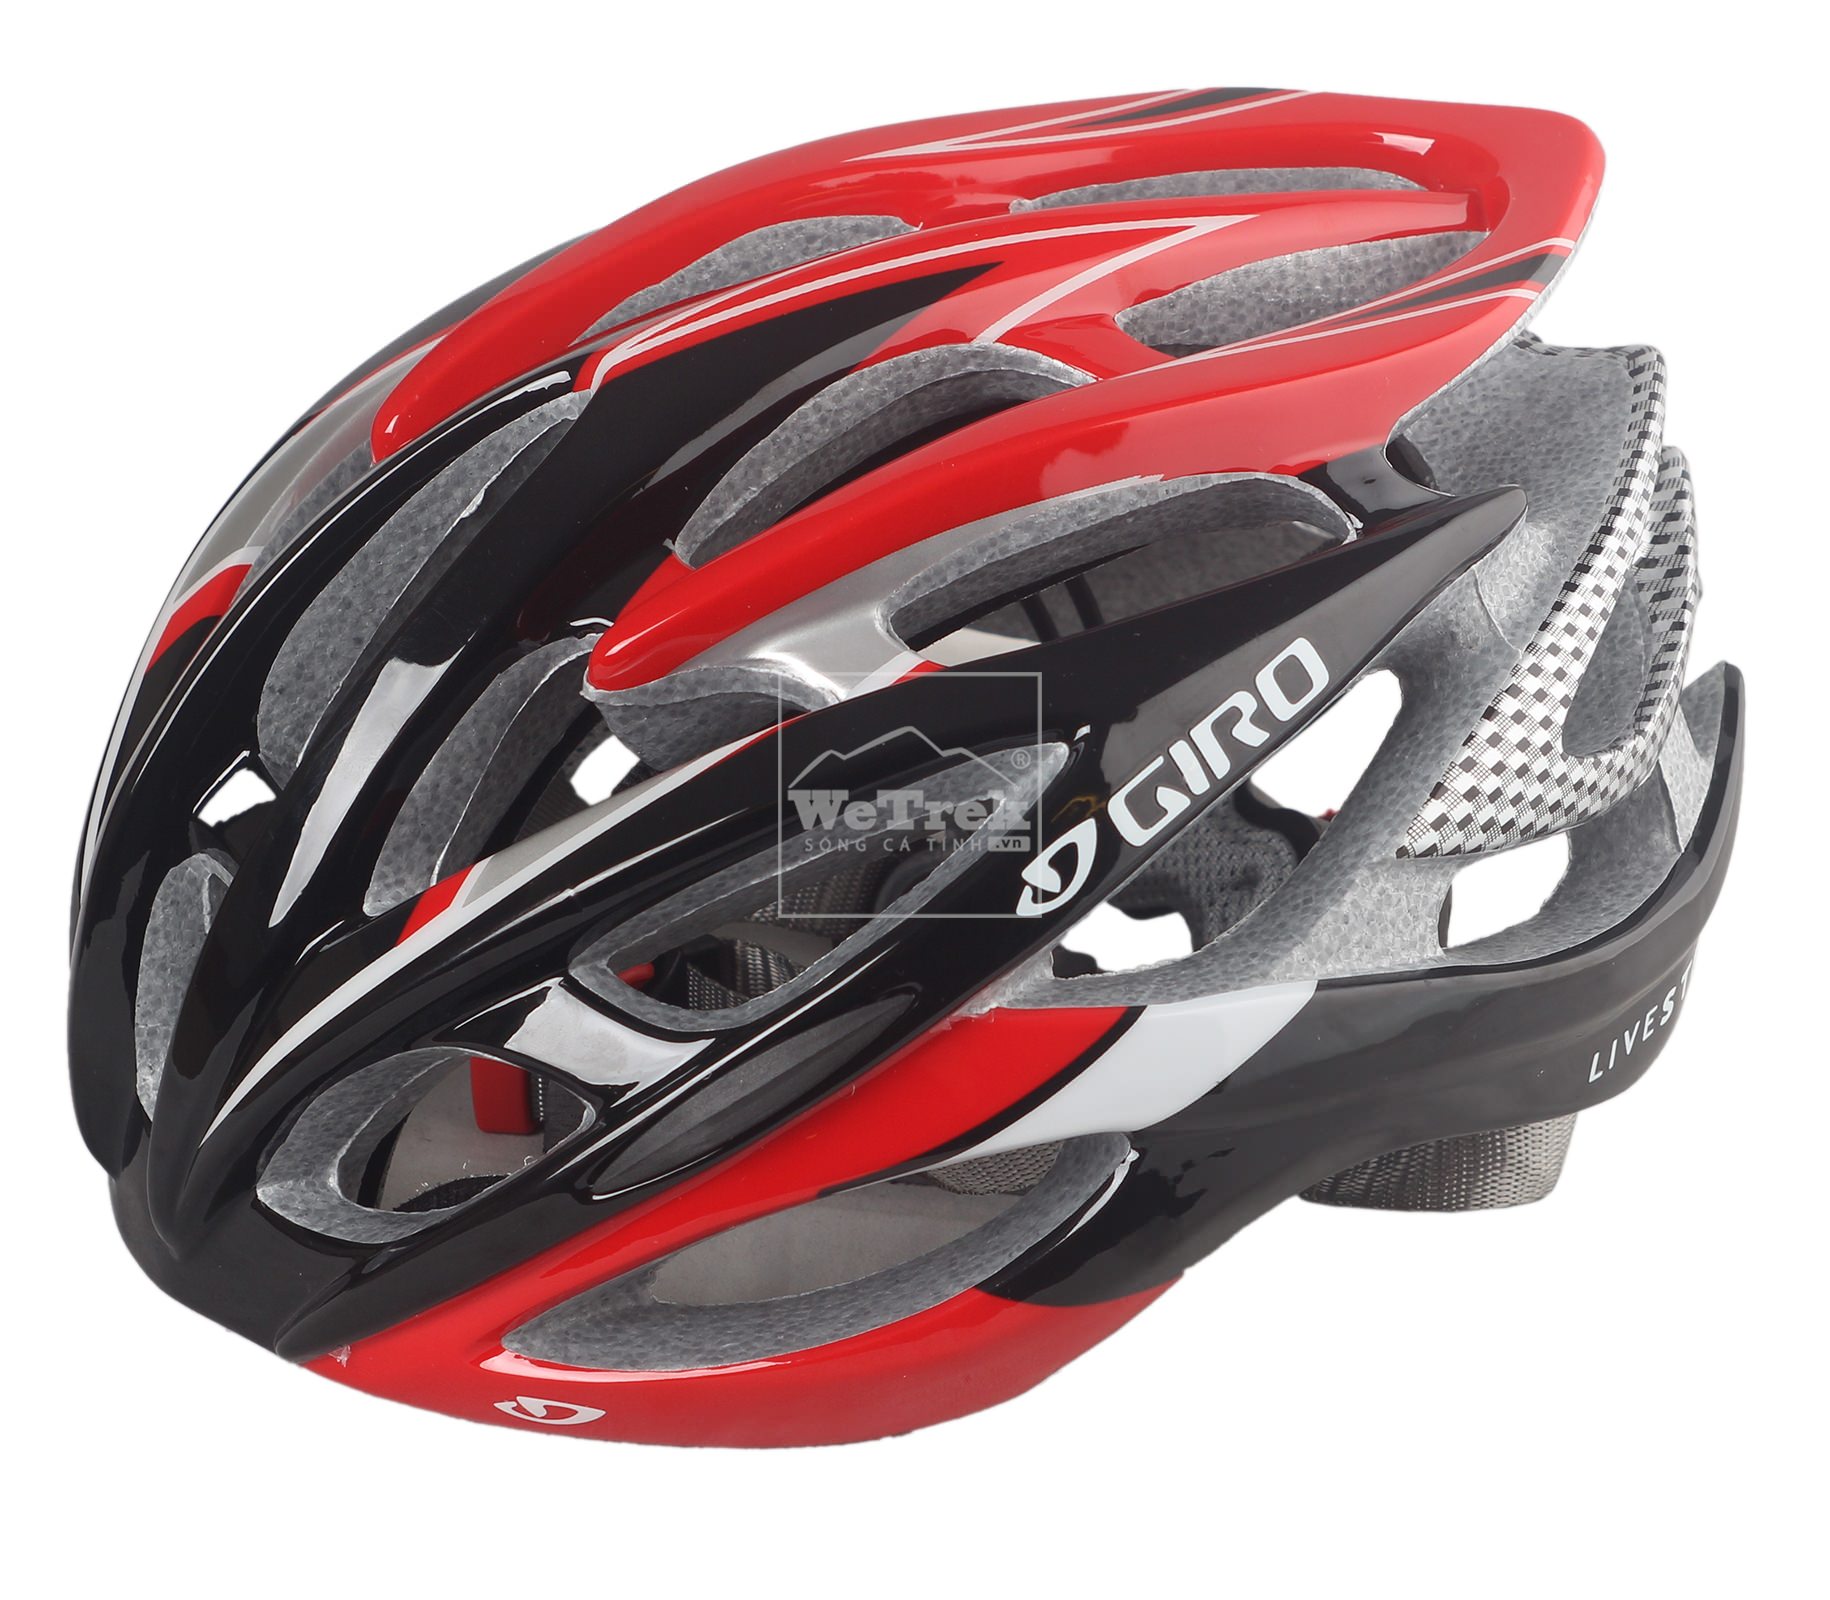 Mũ bảo hiểm xe đạp Giro Livestrong 5092 bán tại WeTrek giá 850.000 đ